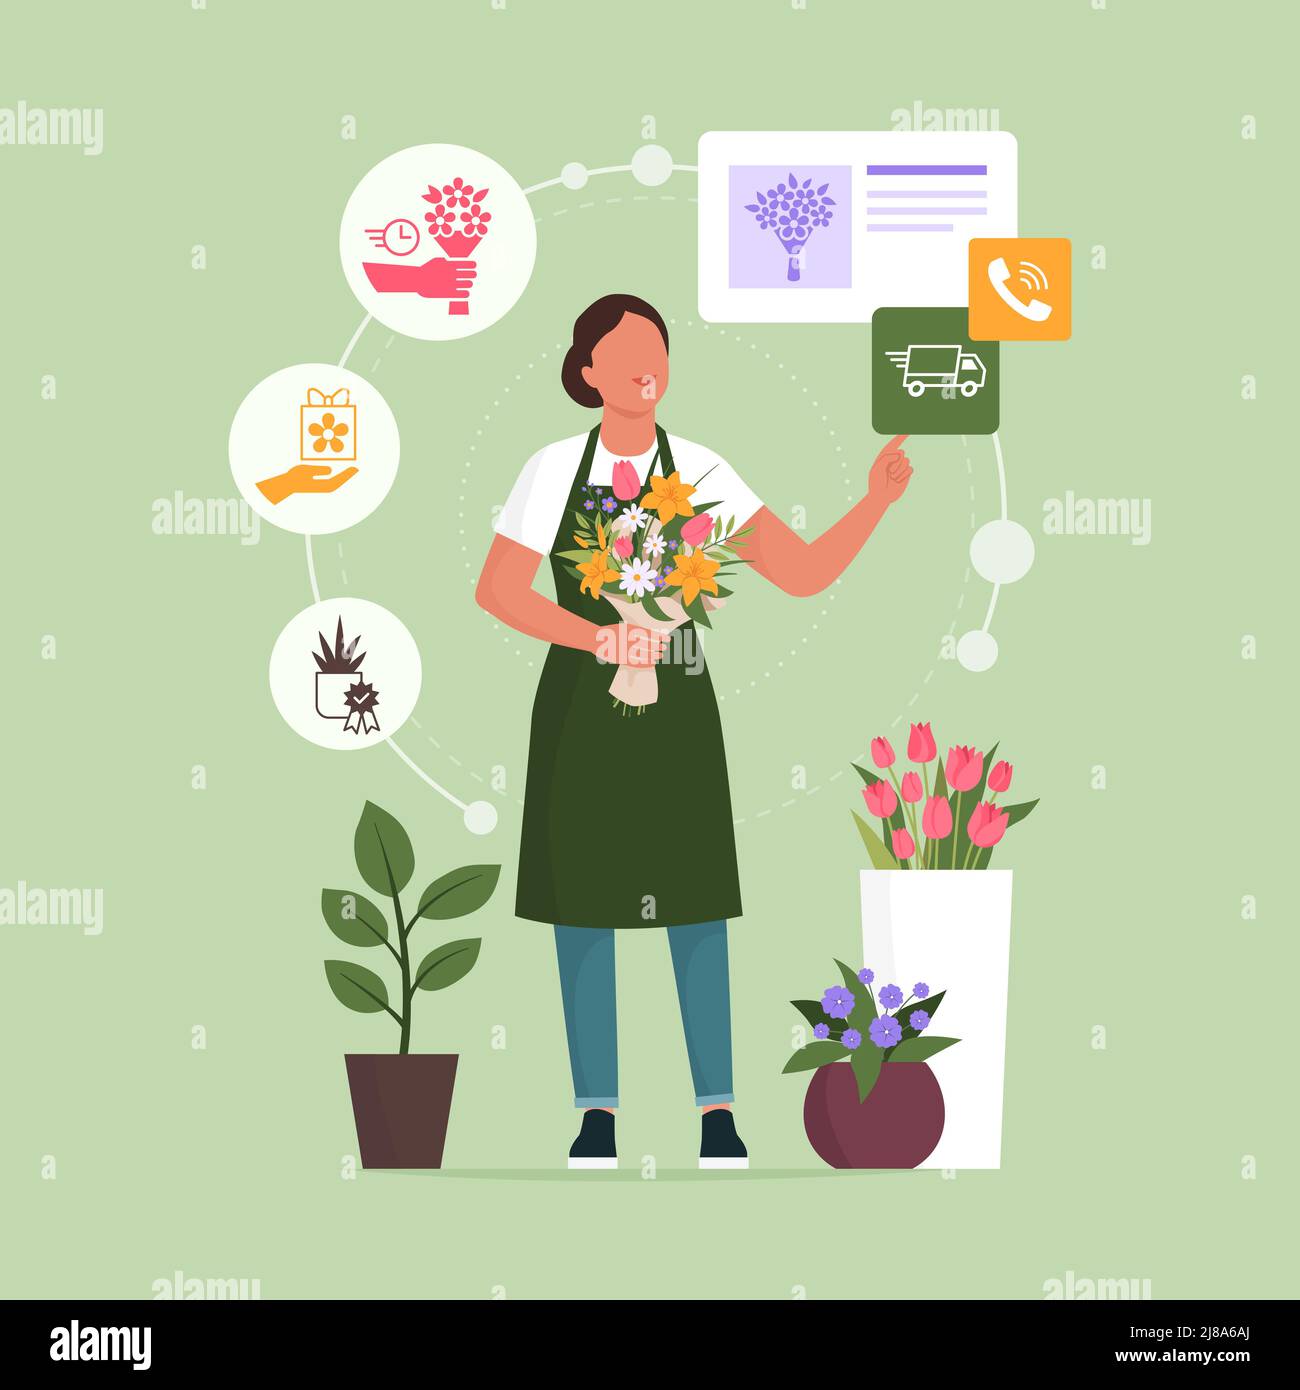 Fleuriste professionnel prenant des commandes en ligne, elle tient un beau bouquet de fleurs et interagit avec une interface utilisateur Illustration de Vecteur